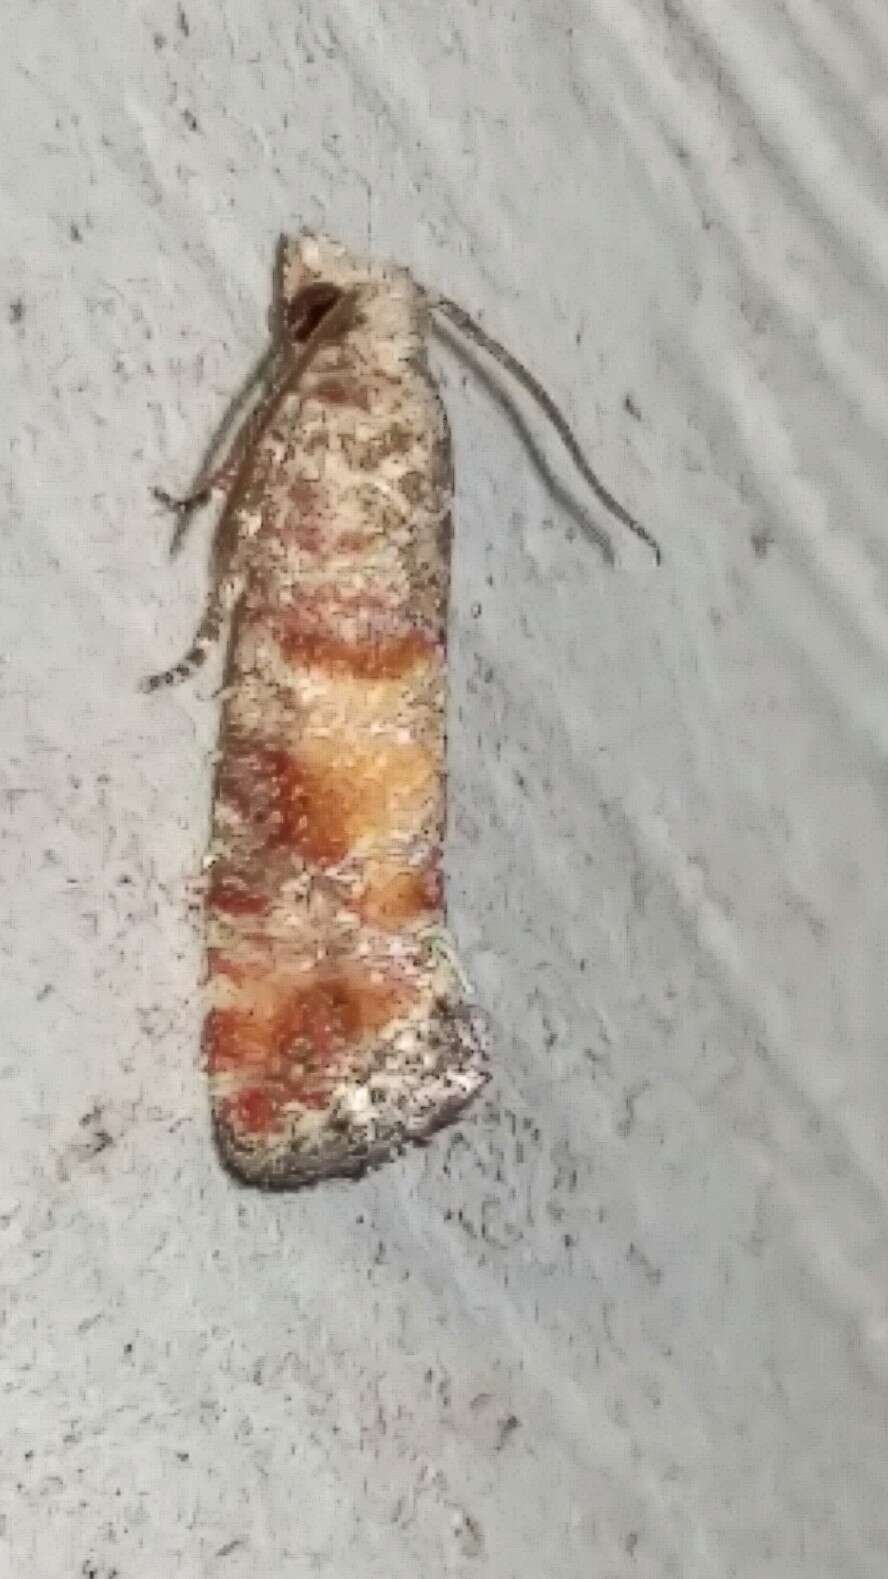 Image of Nantucket Pine Tip Moth